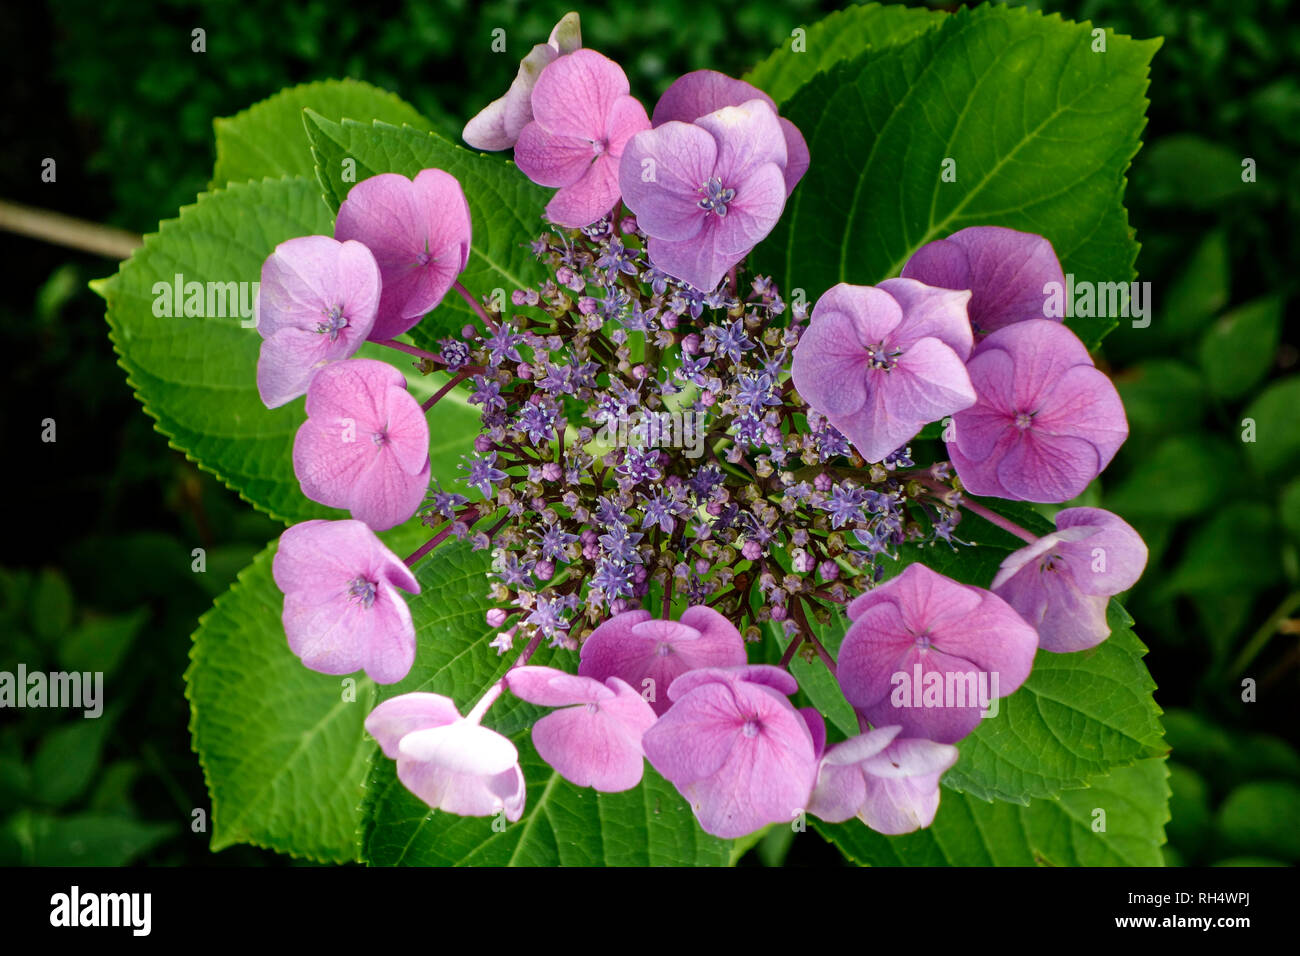 Hortensie in the garden (Hydrangea Macrophylla) Stock Photo